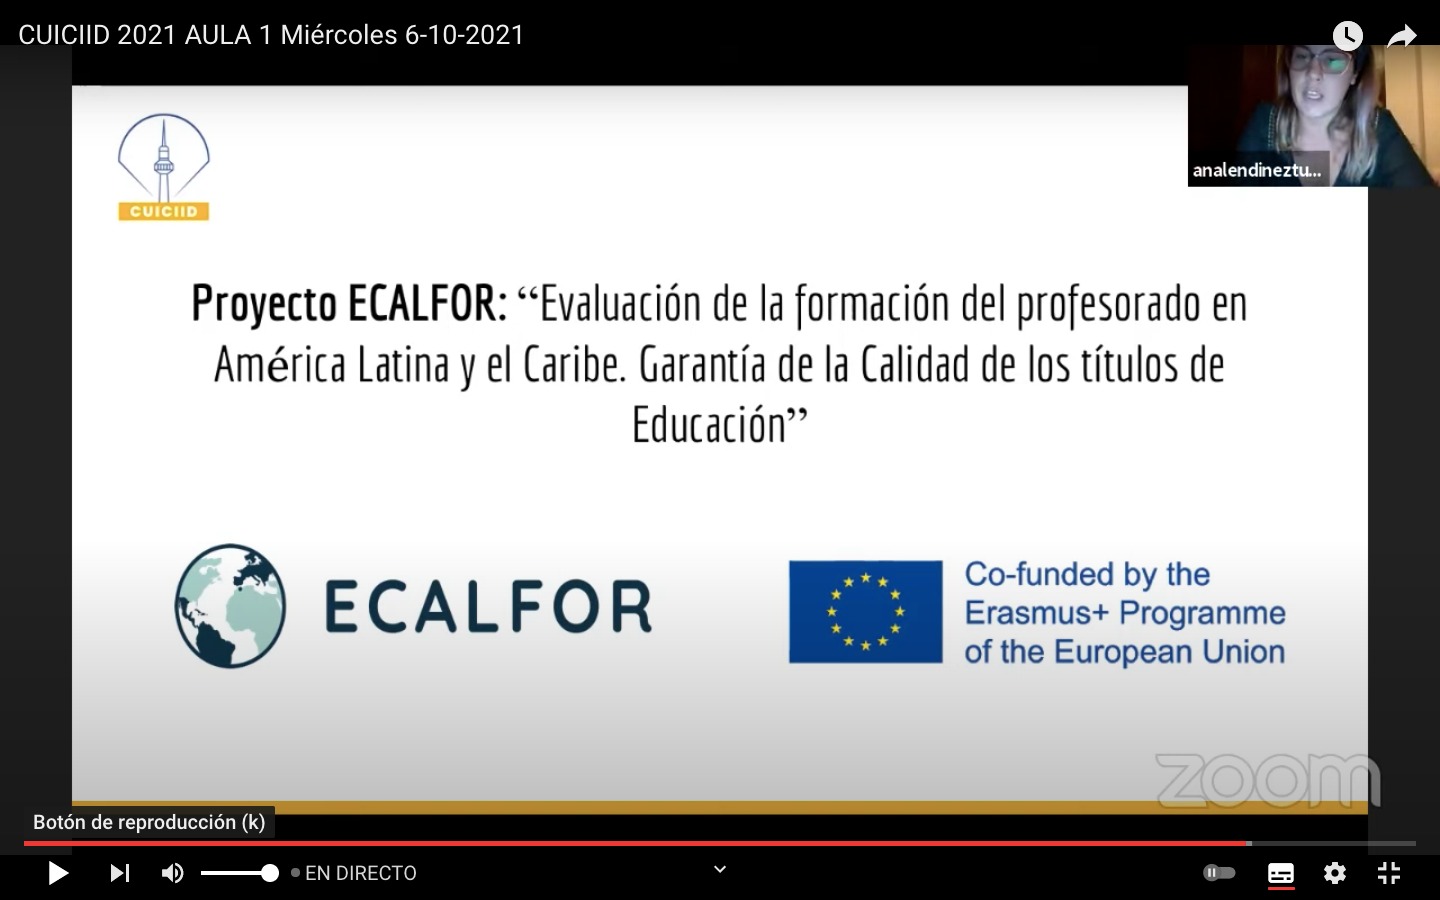 El proyecto ECALFOR en el XI Congreso Universitario Internacional sobre Contenidos, Investigación, Innovación y Docencia (CUICIID 2021)